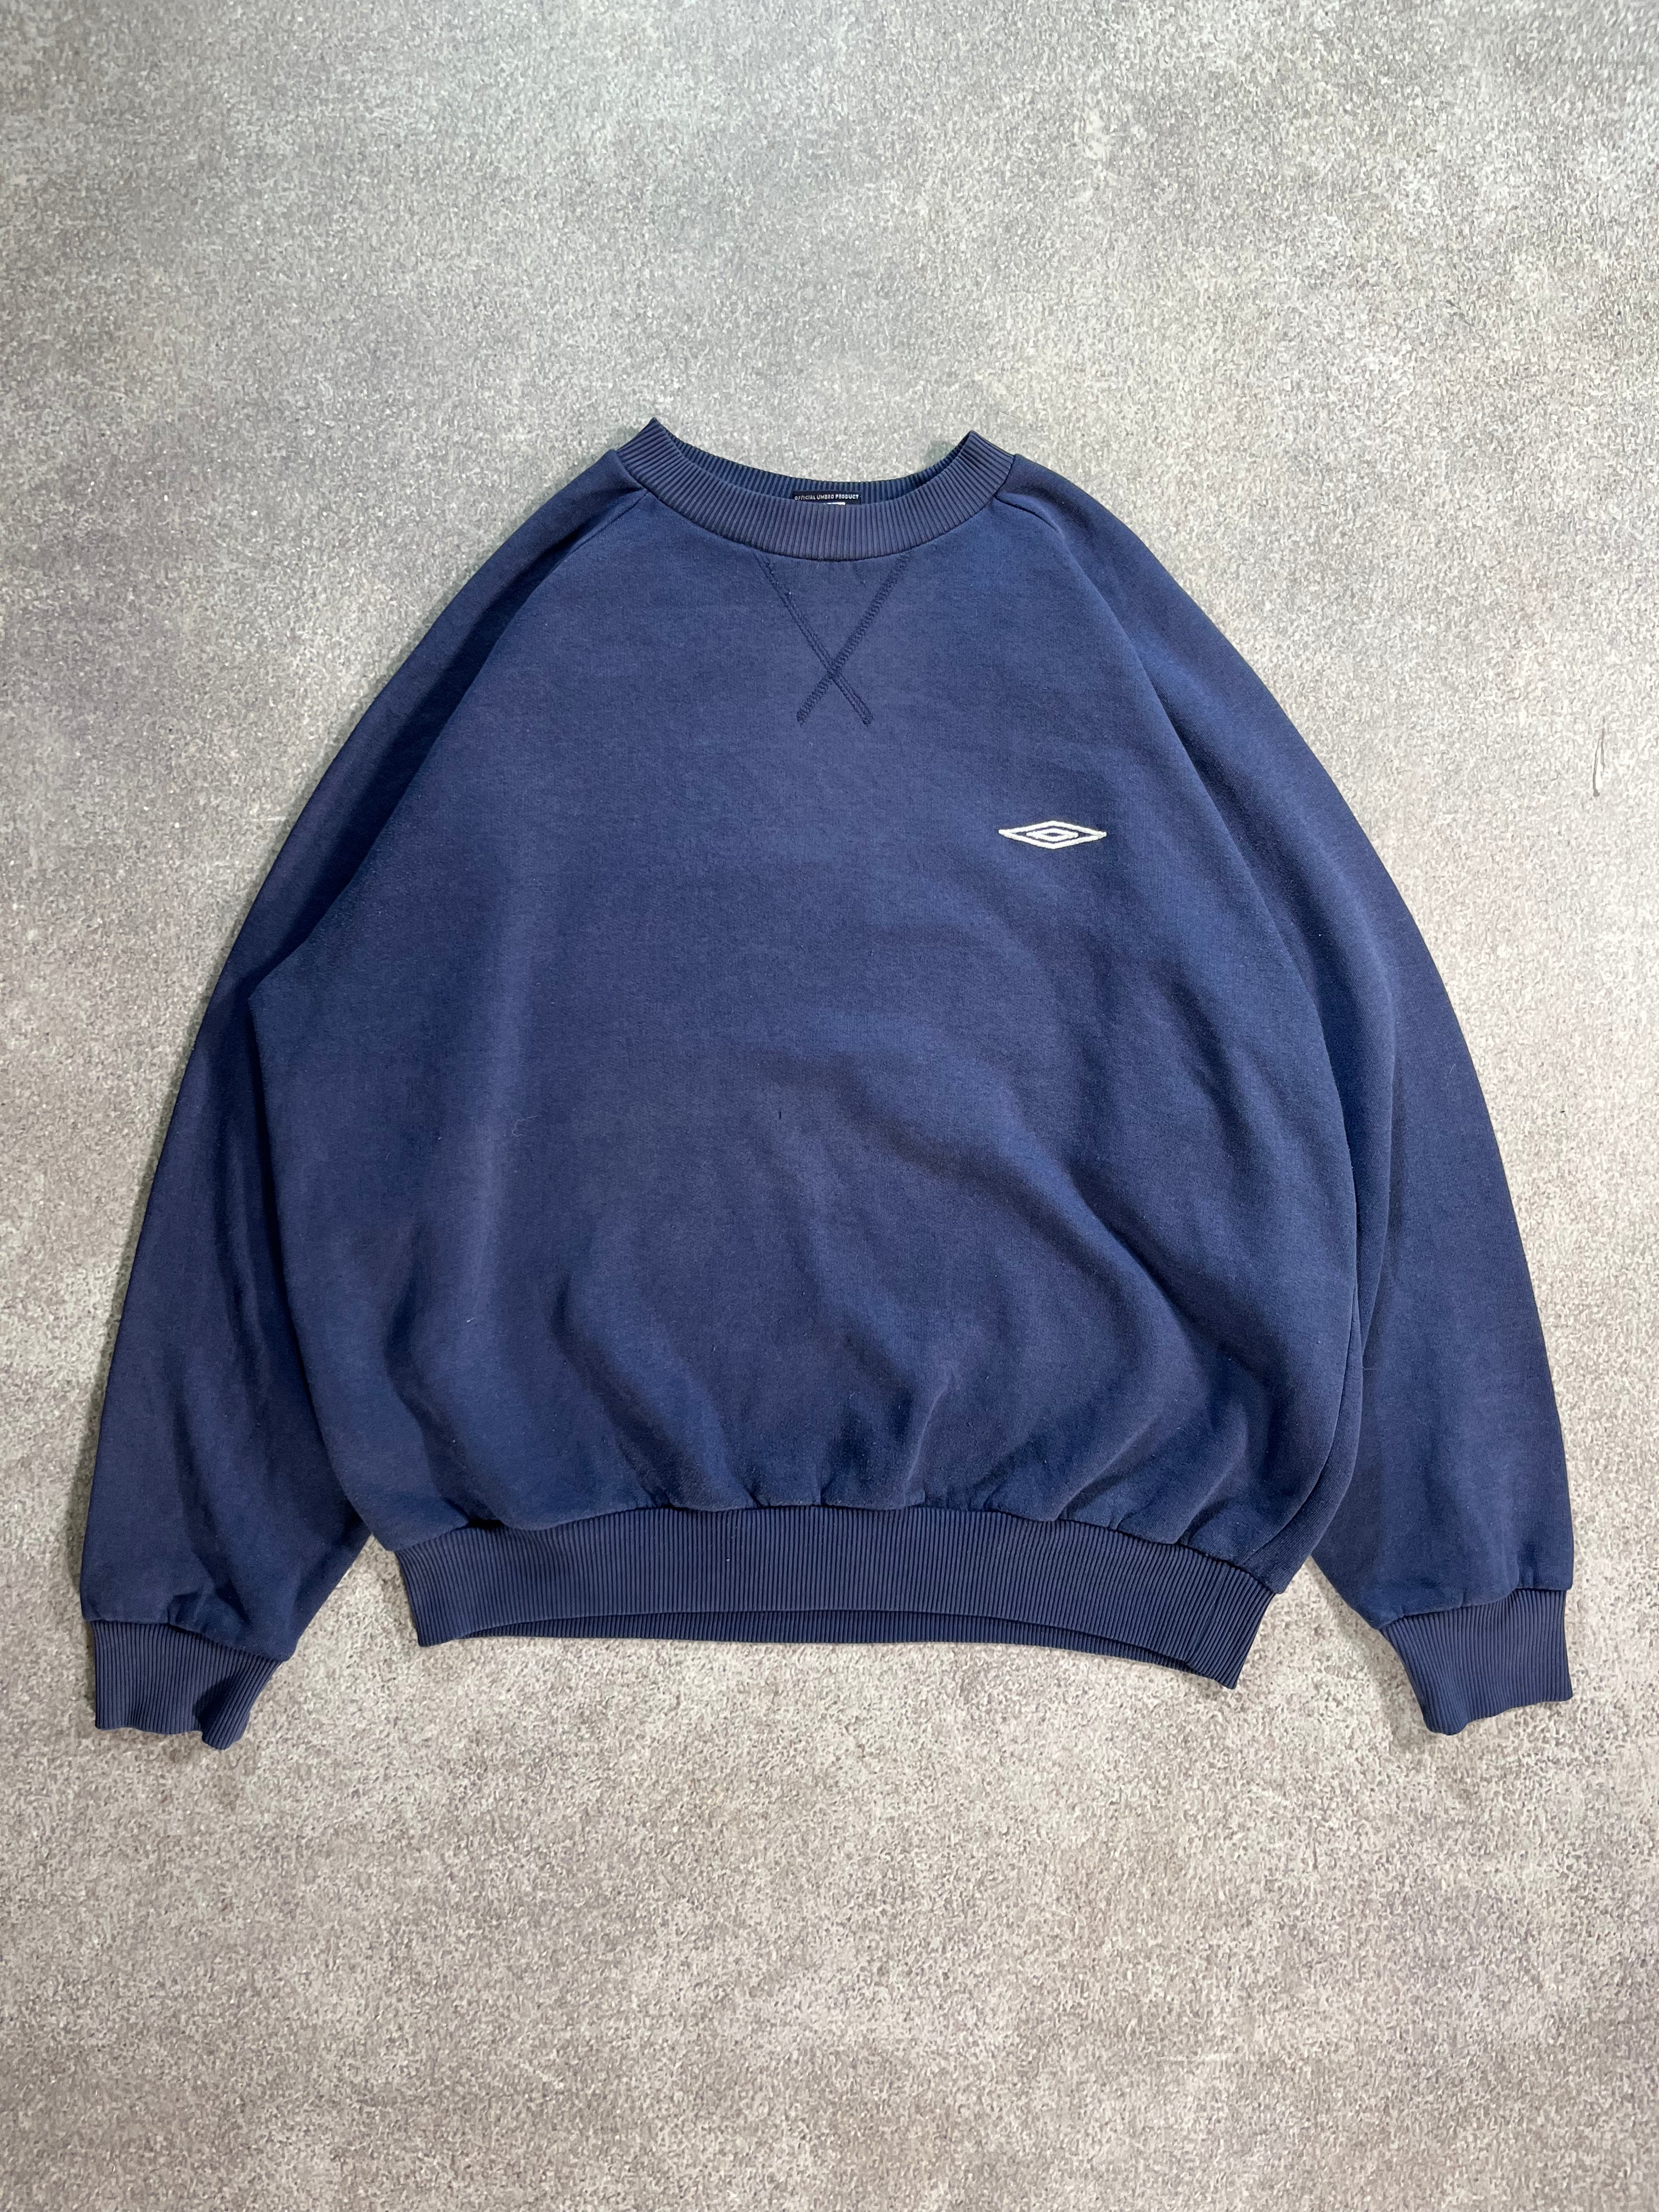 Vintage Umbro Sweater Blue  // Medium - RHAGHOUSE VINTAGE